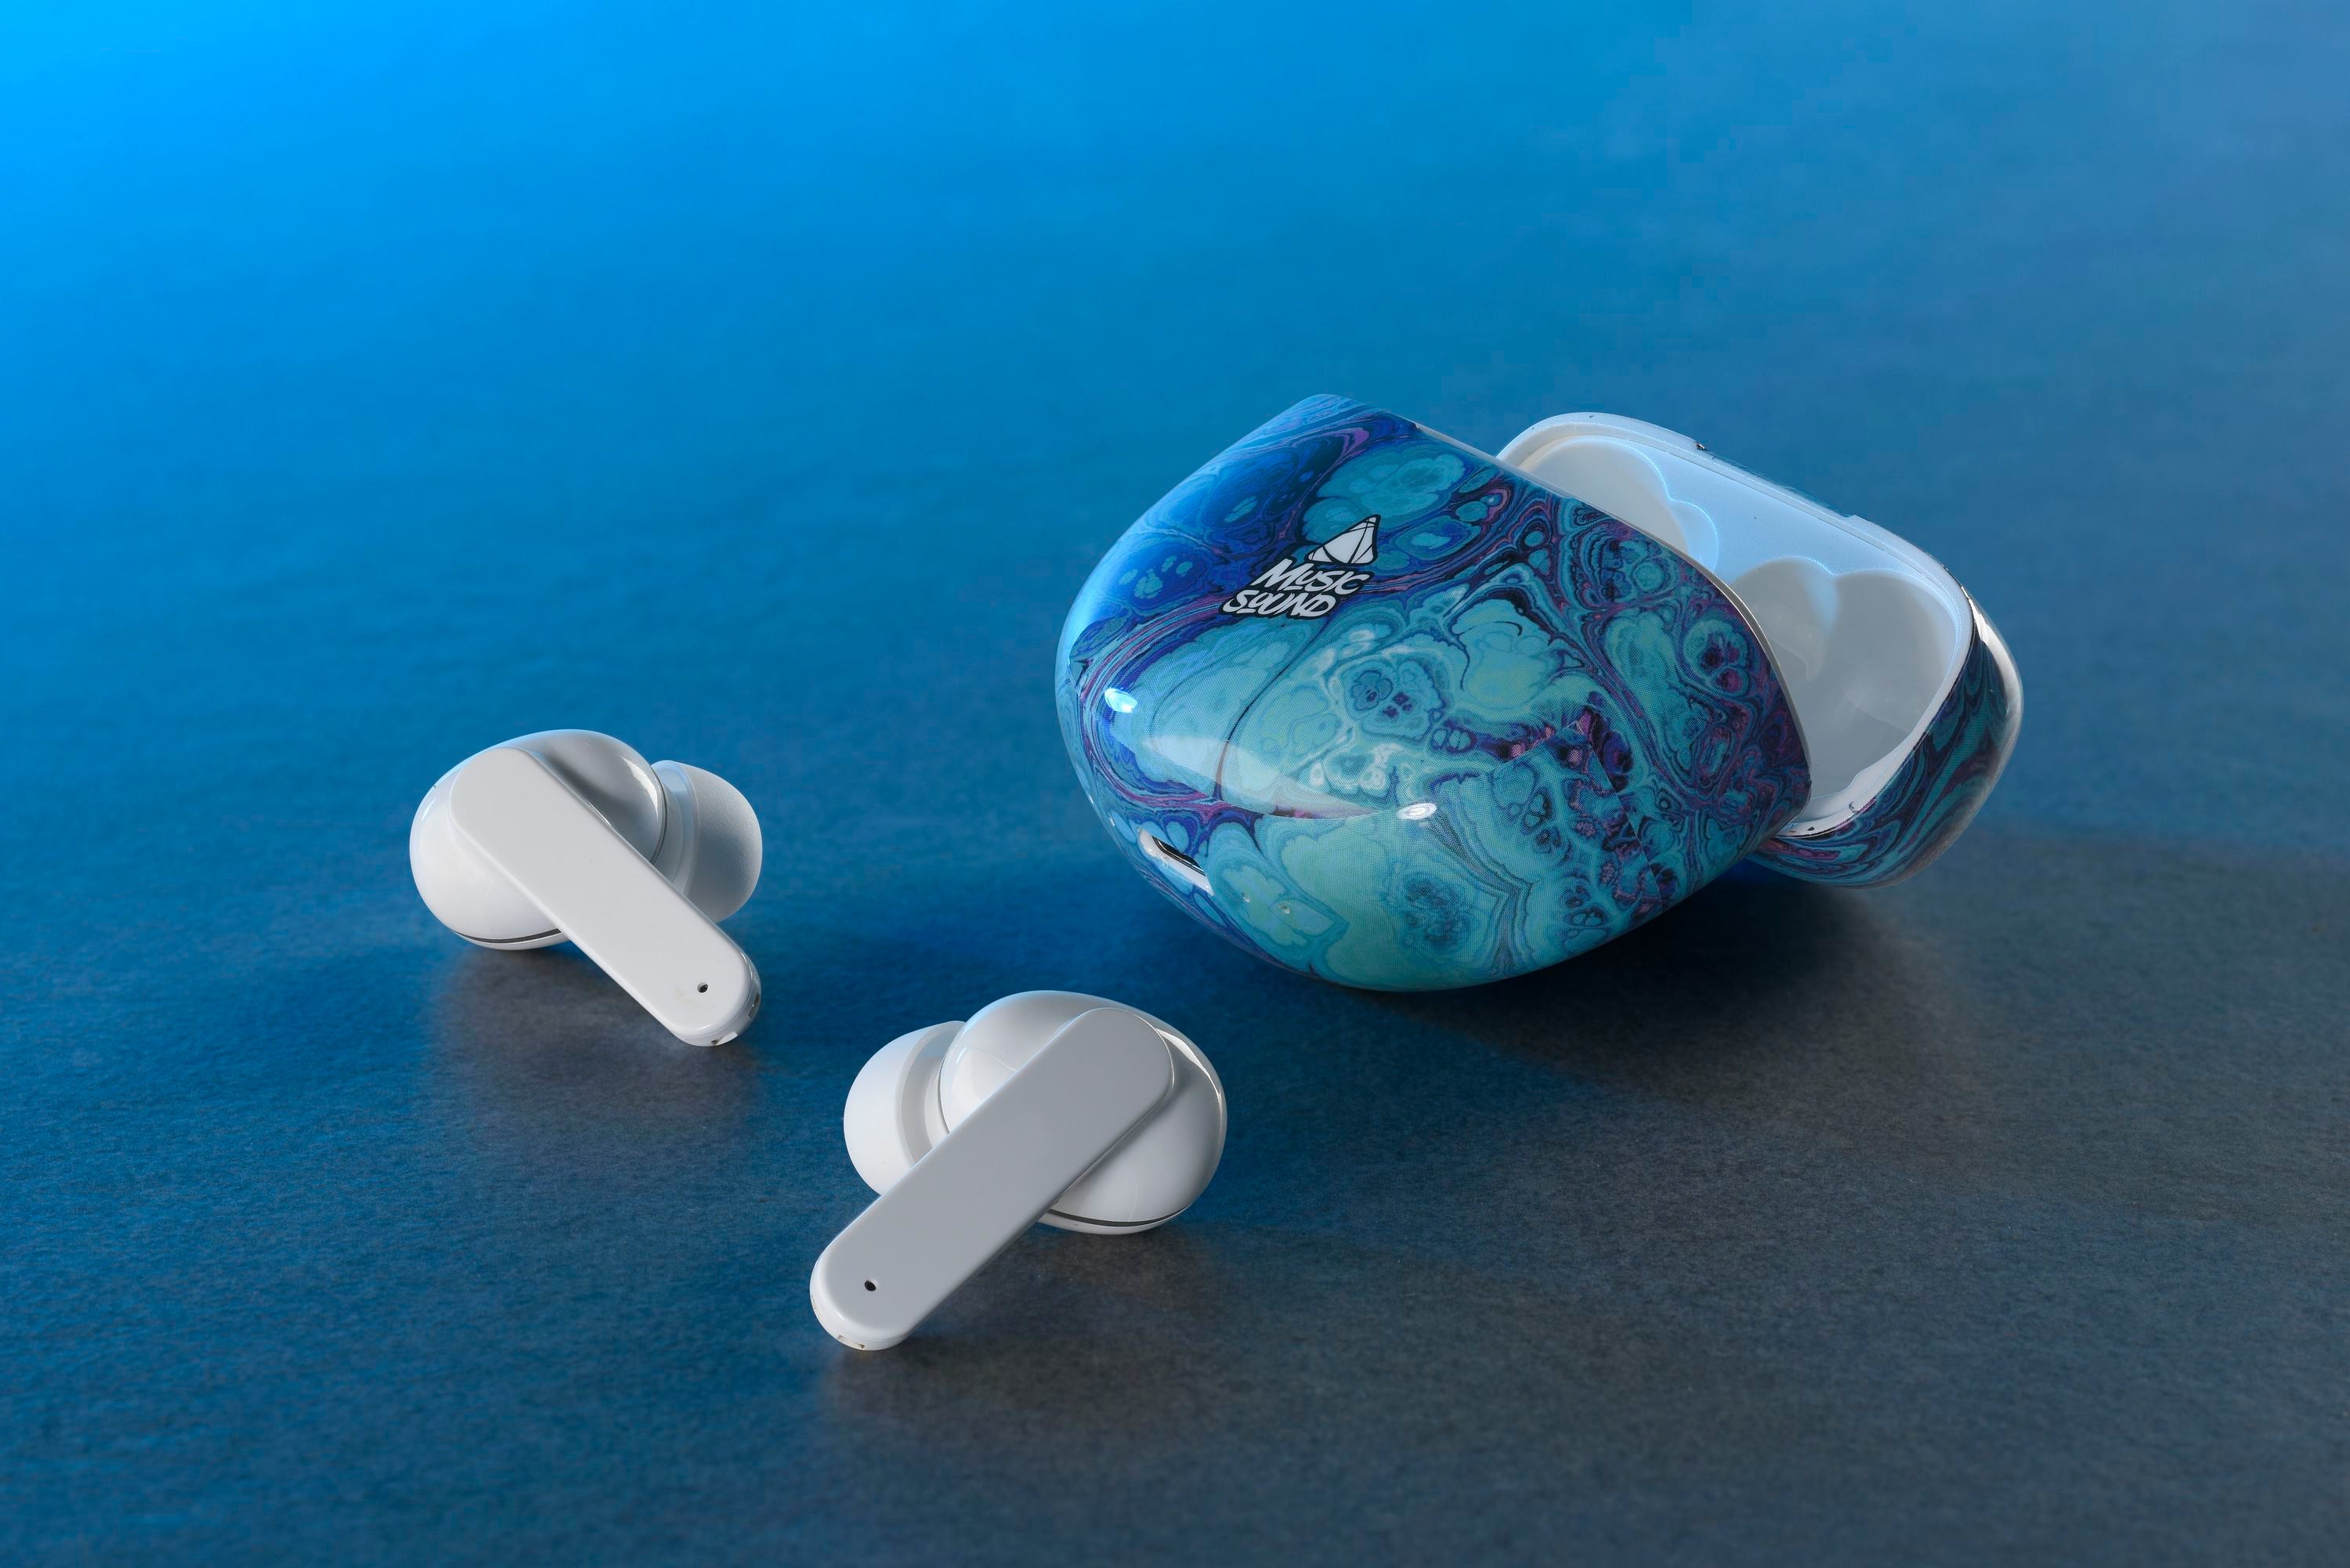 Music Sound In-Ear Bluetooth Earphones